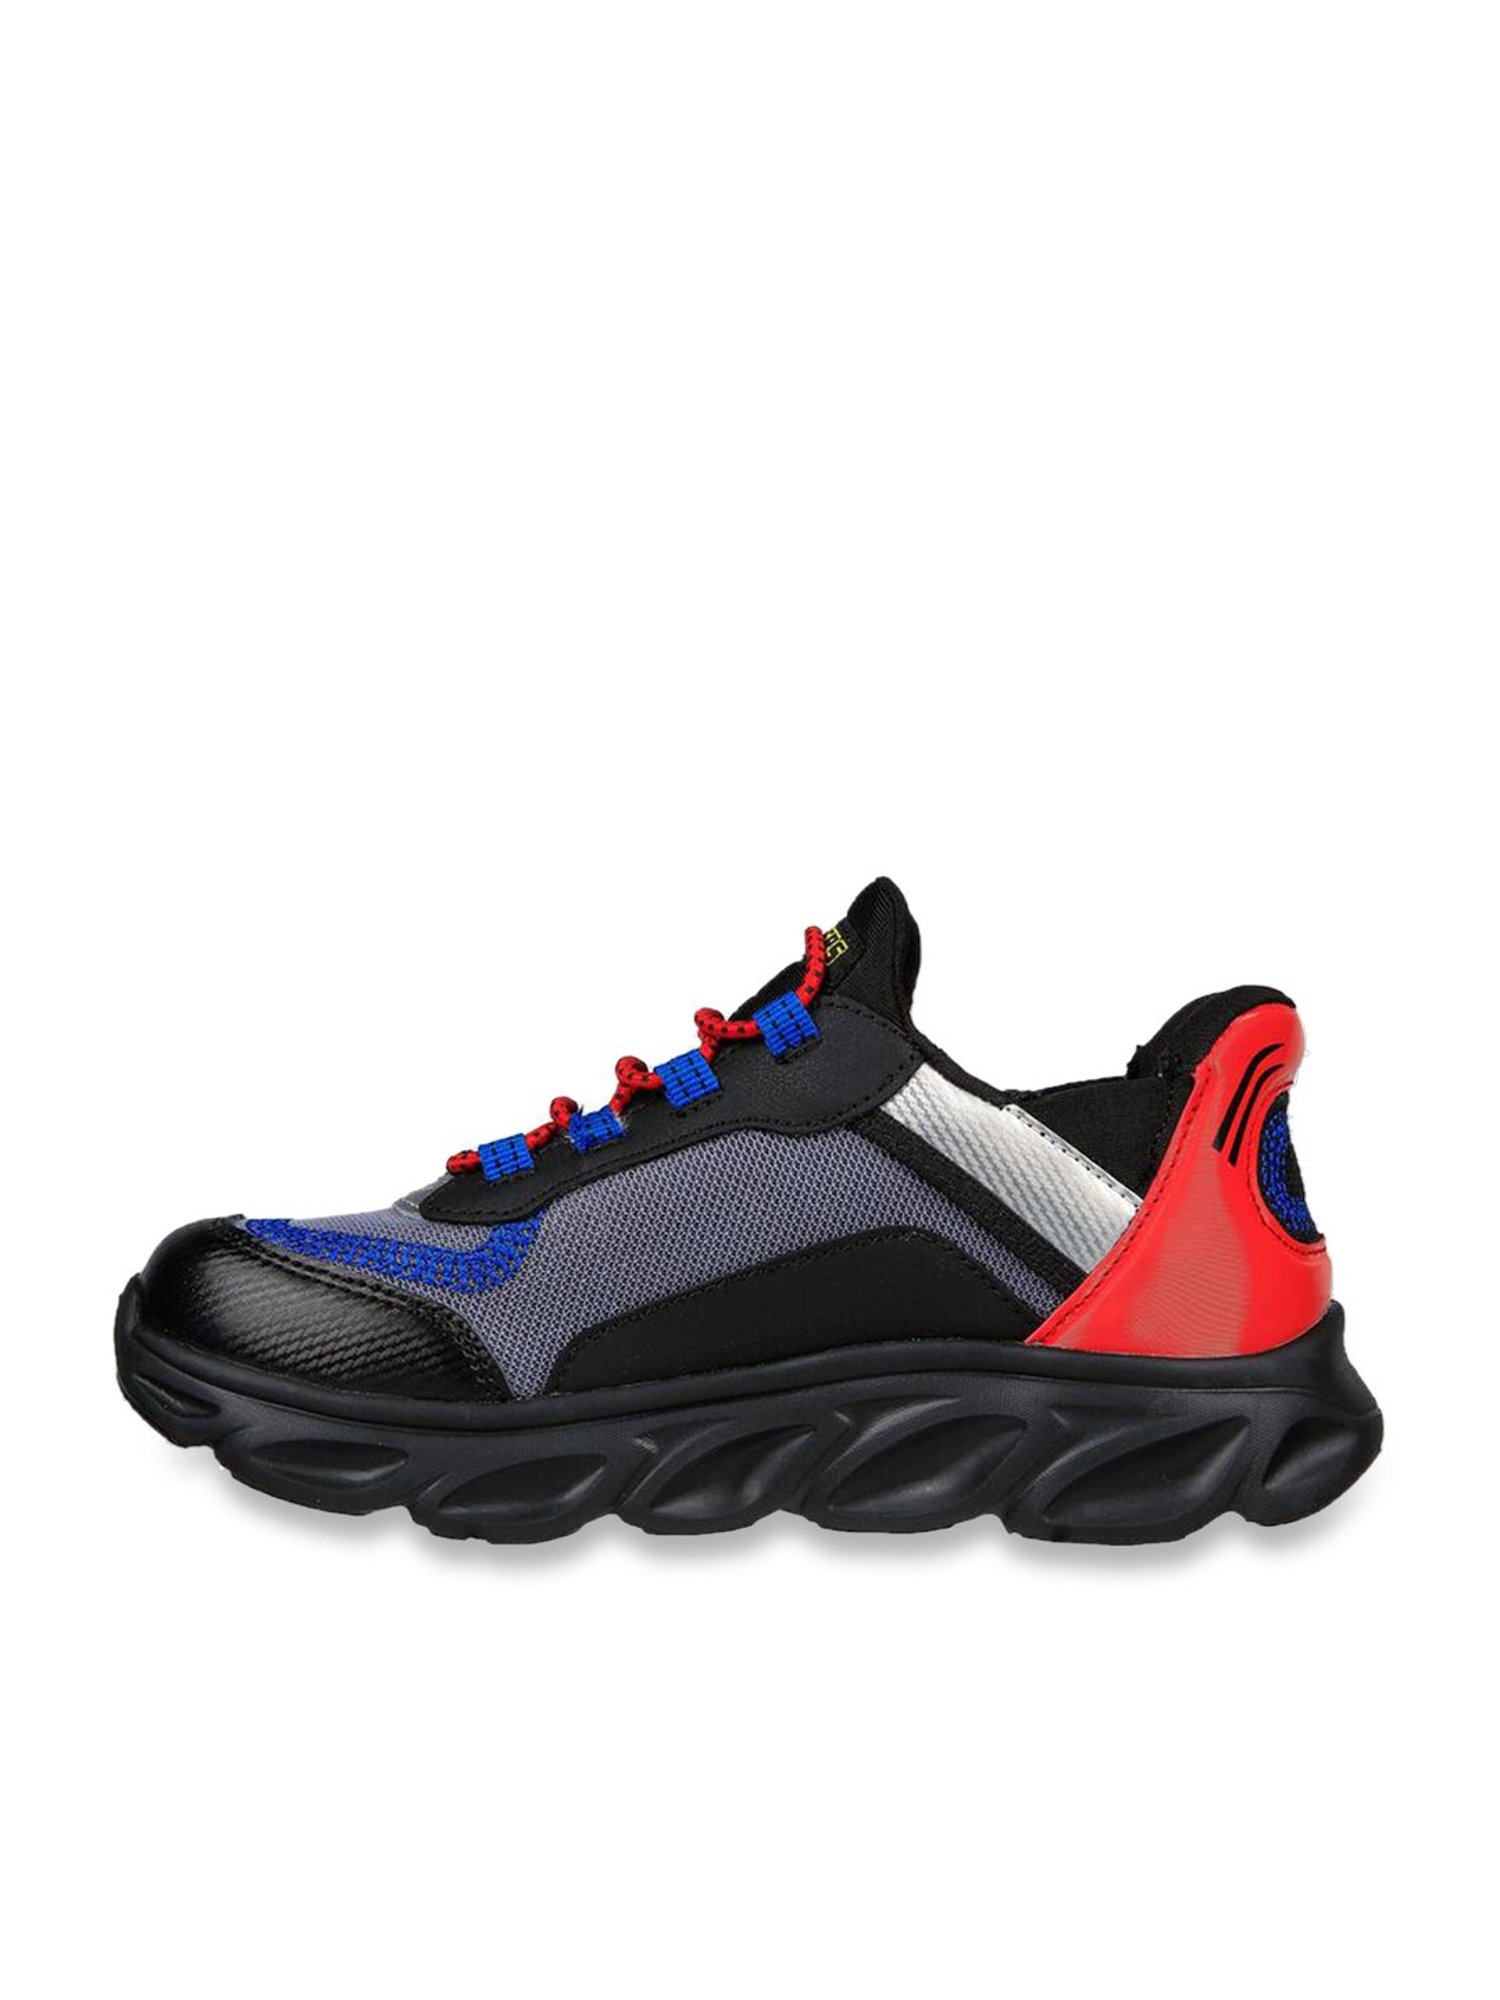 Skechers Flex Glide Hands Free Slip-Ins Little Boys Sneakers, Color: Blue  Multi - JCPenney